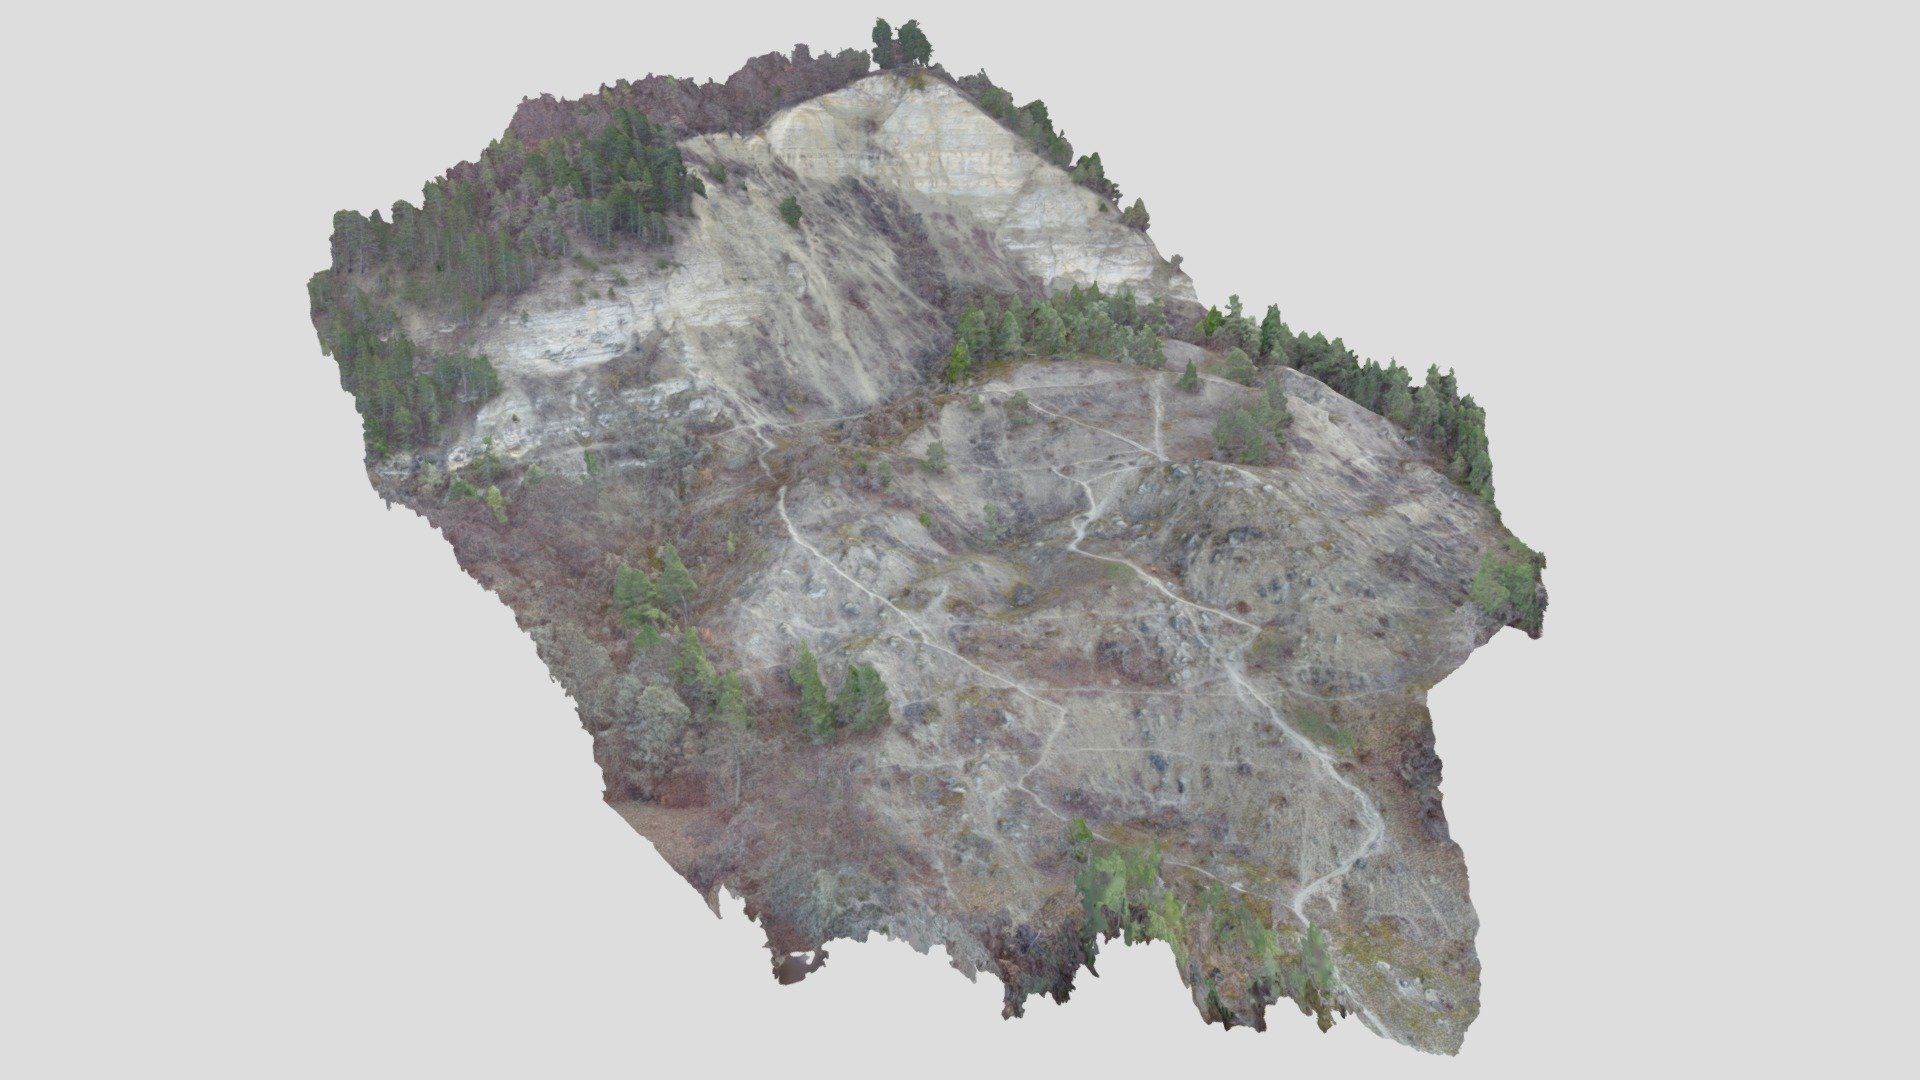 Dohlenstein landslide, Kahla, Thuringia